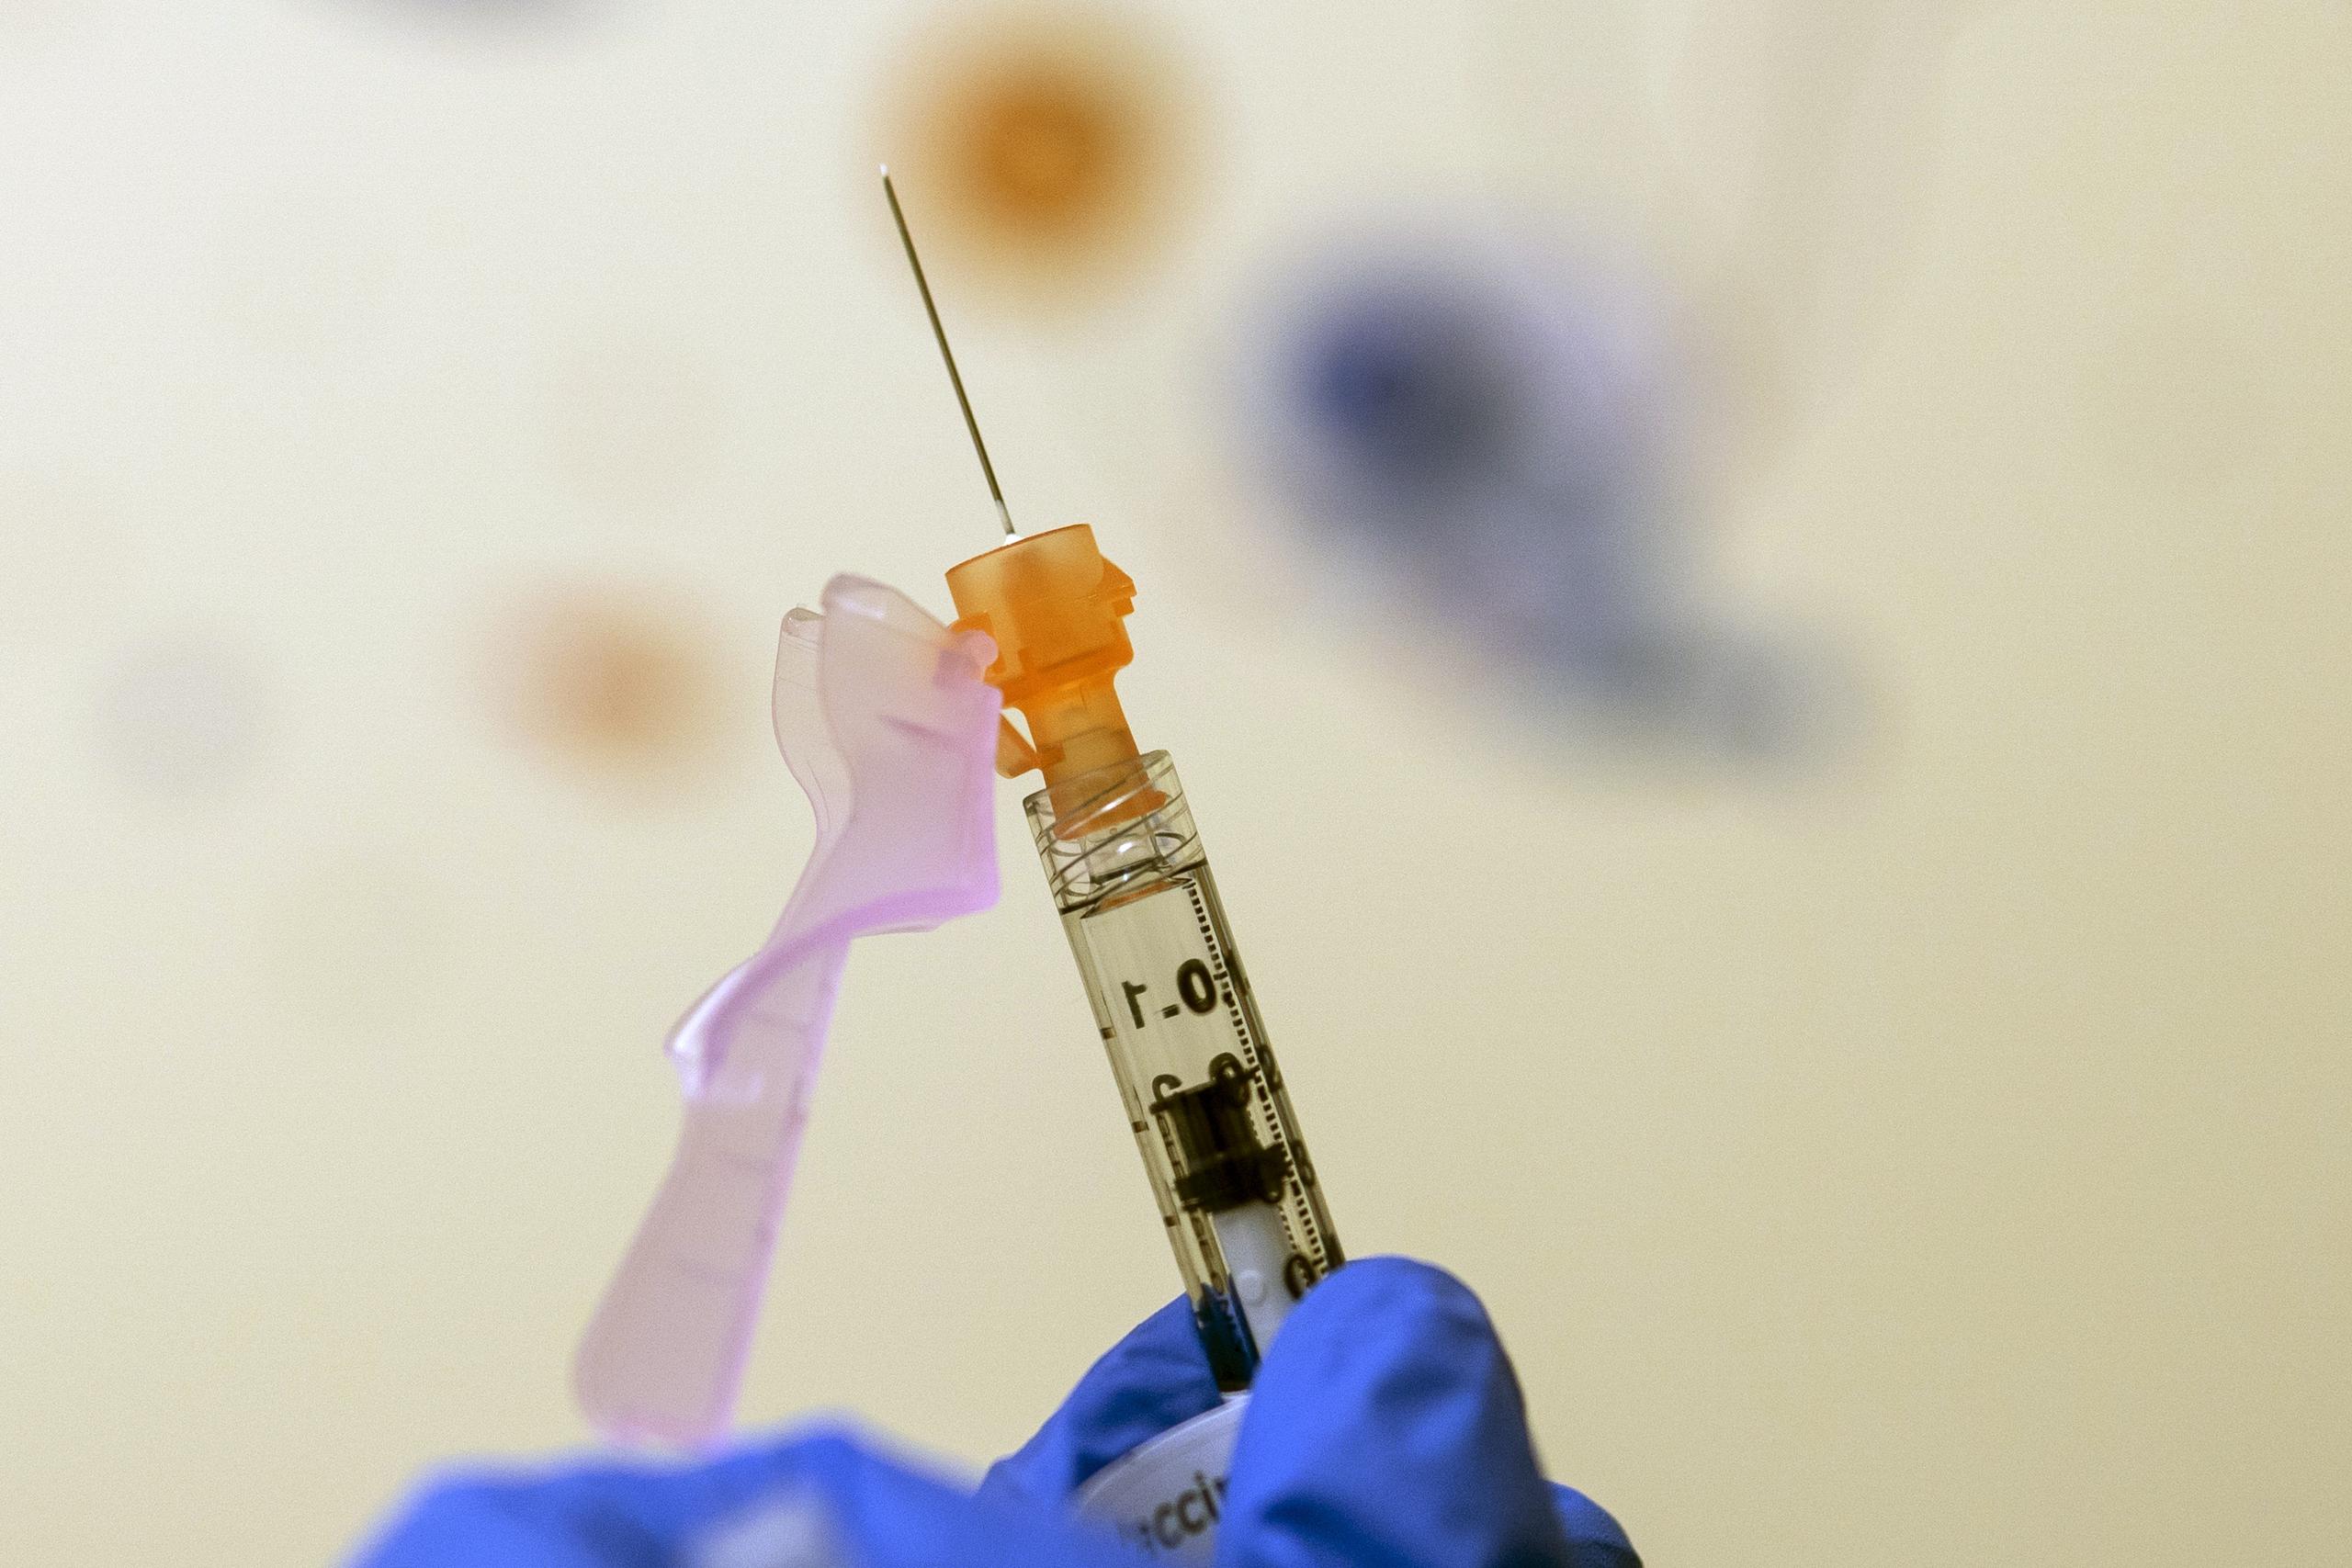 La FDA sostuvo que estarán evaluando "todas las opciones disponibles" tras el aumento de hospitalizaciones que hubo en menores de edad con la ola de contagios por la variante ómicron.